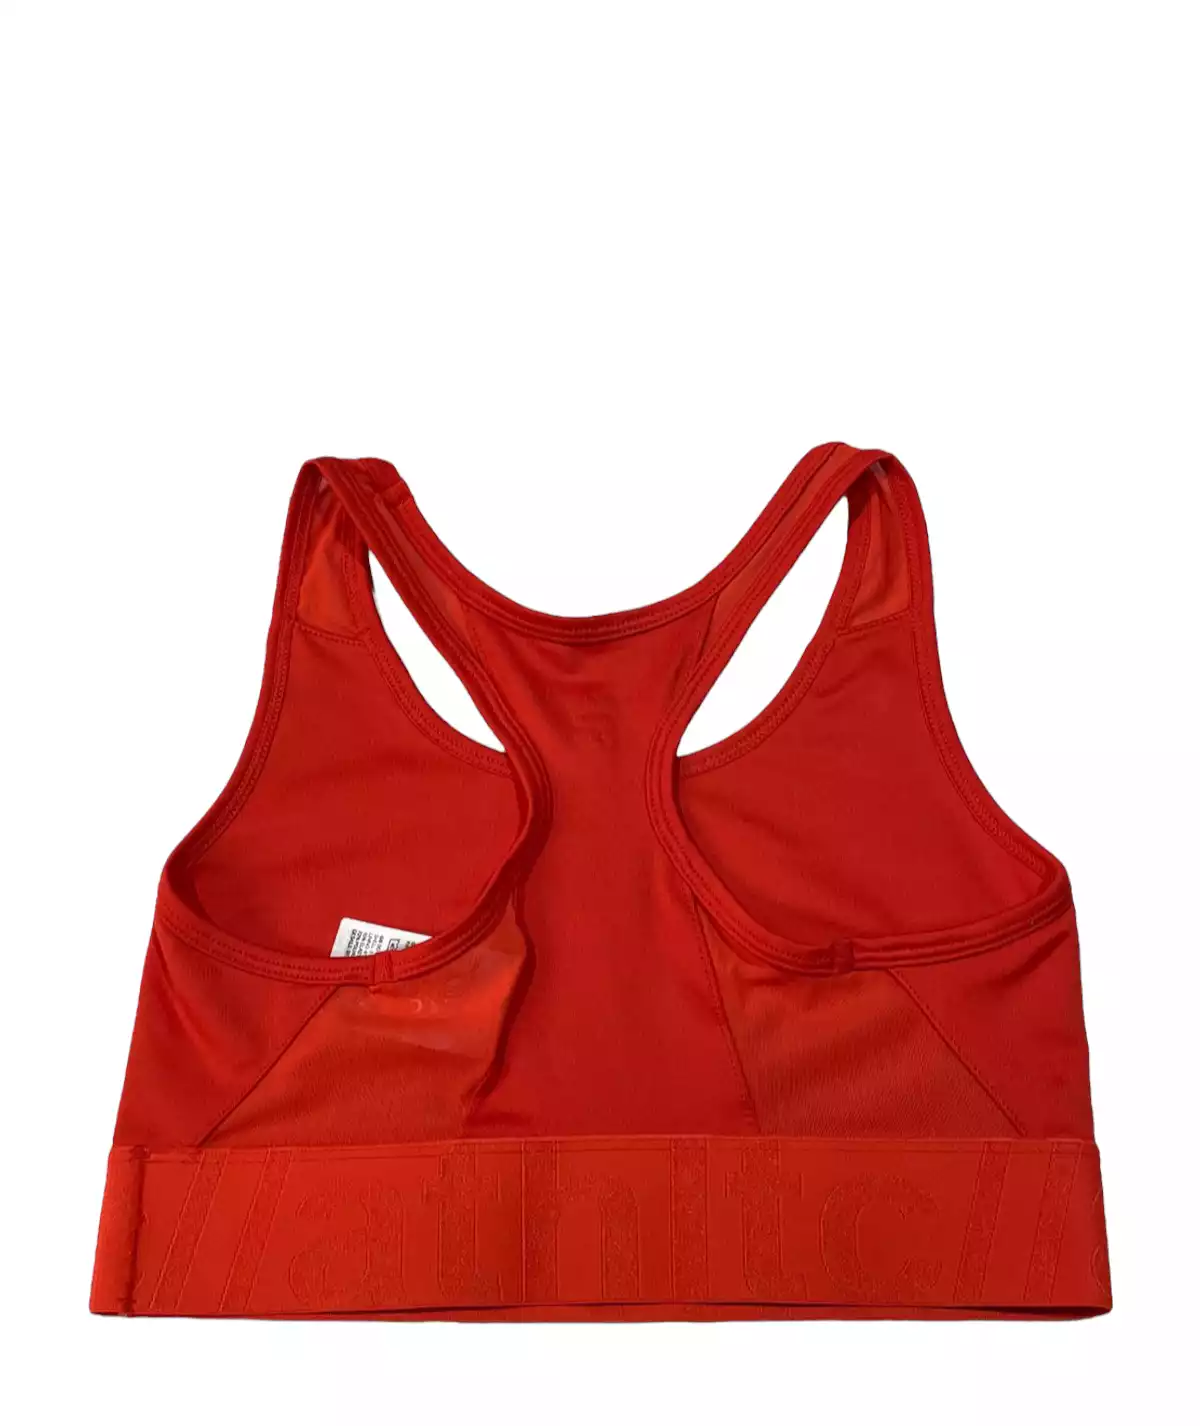 Sports bra by H&M – Retold